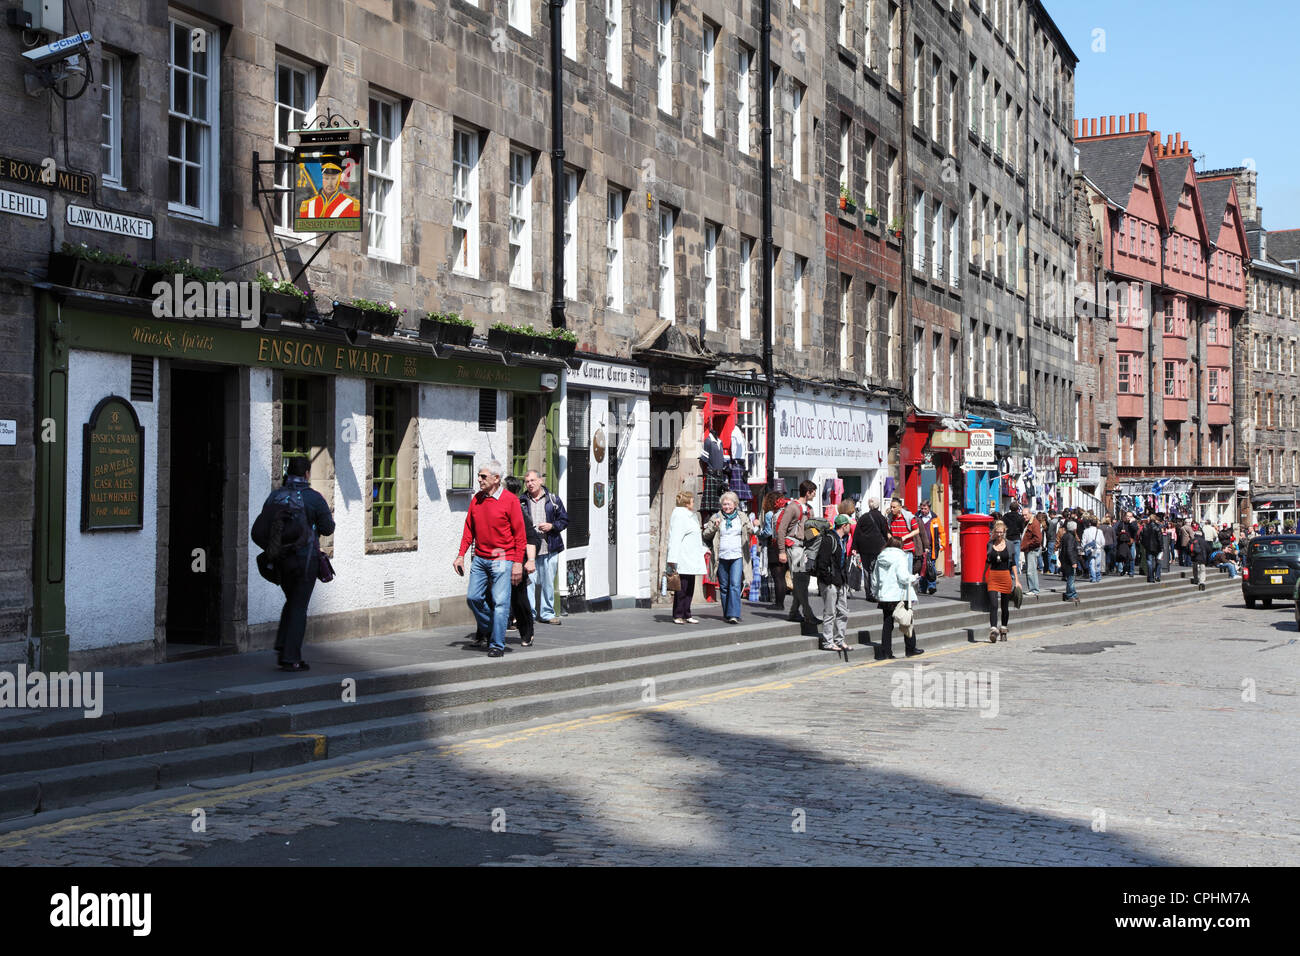 Menschen zu Fuß entlang der Royal Mile, vorbei an der Fähnrich Ewart Kneipe in Edinburgh Schottland, Vereinigtes Königreich Stockfoto